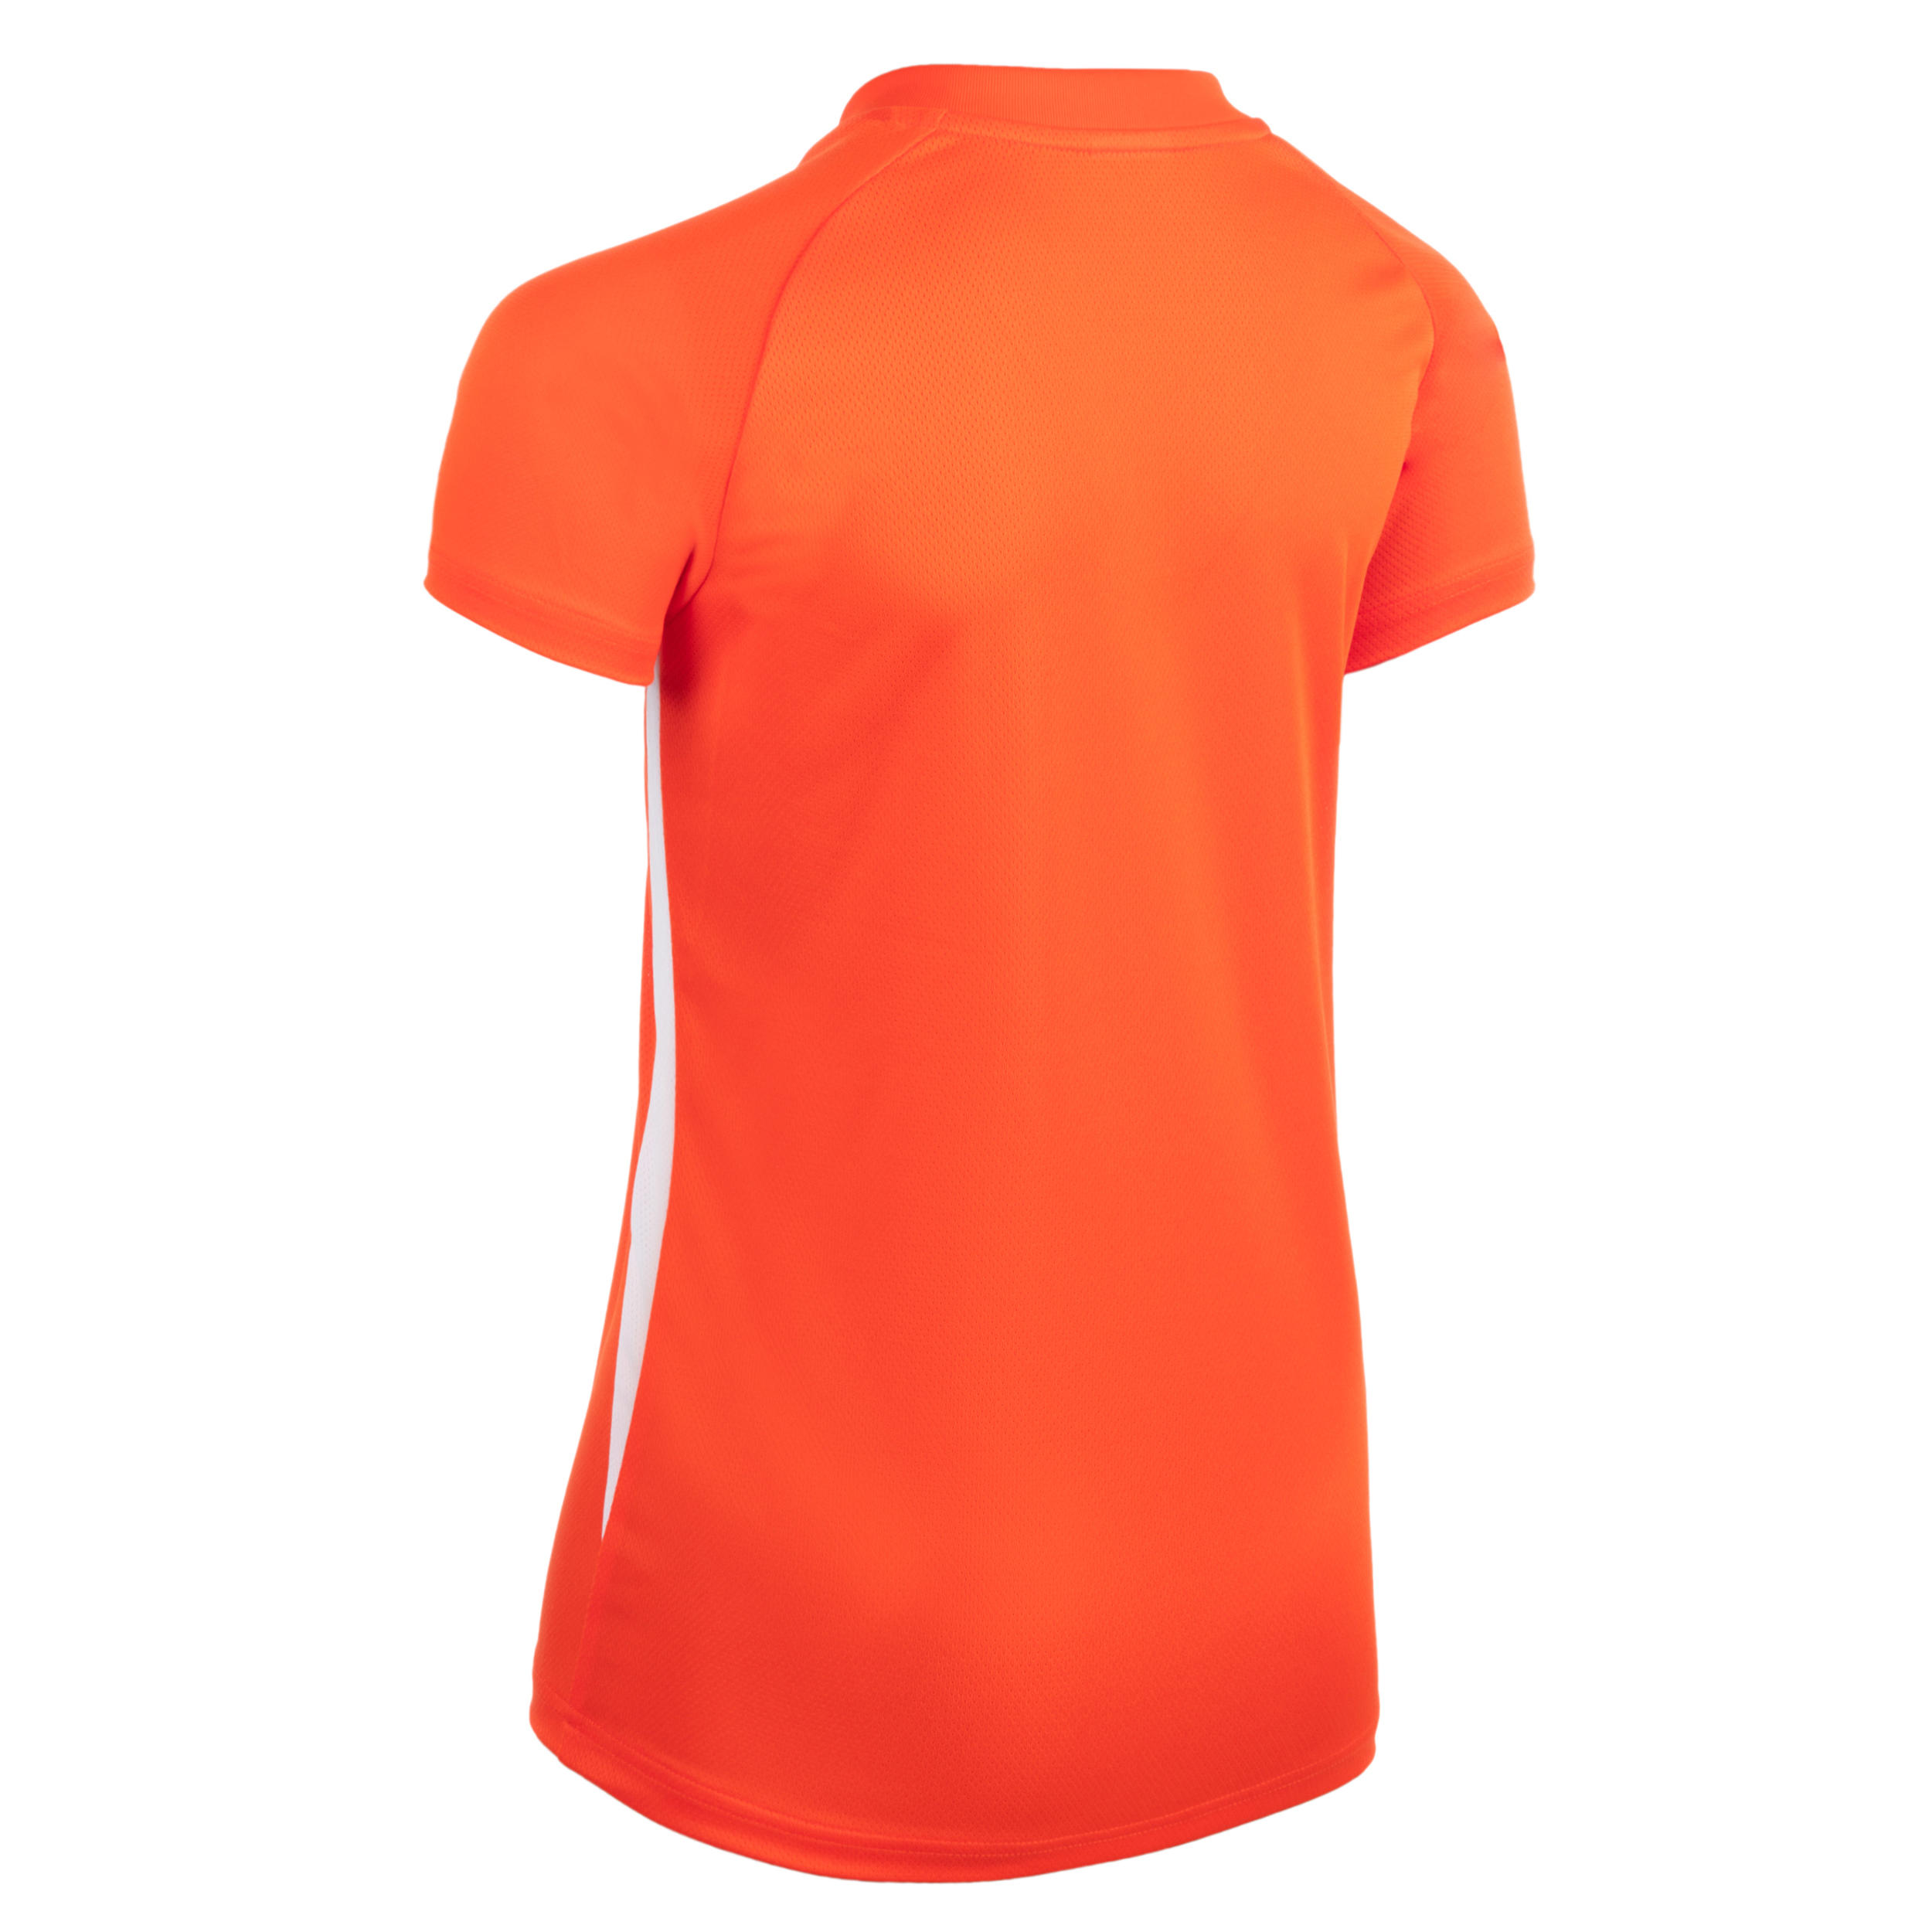 V100 Girls' Volleyball Jersey - Orange 2/2